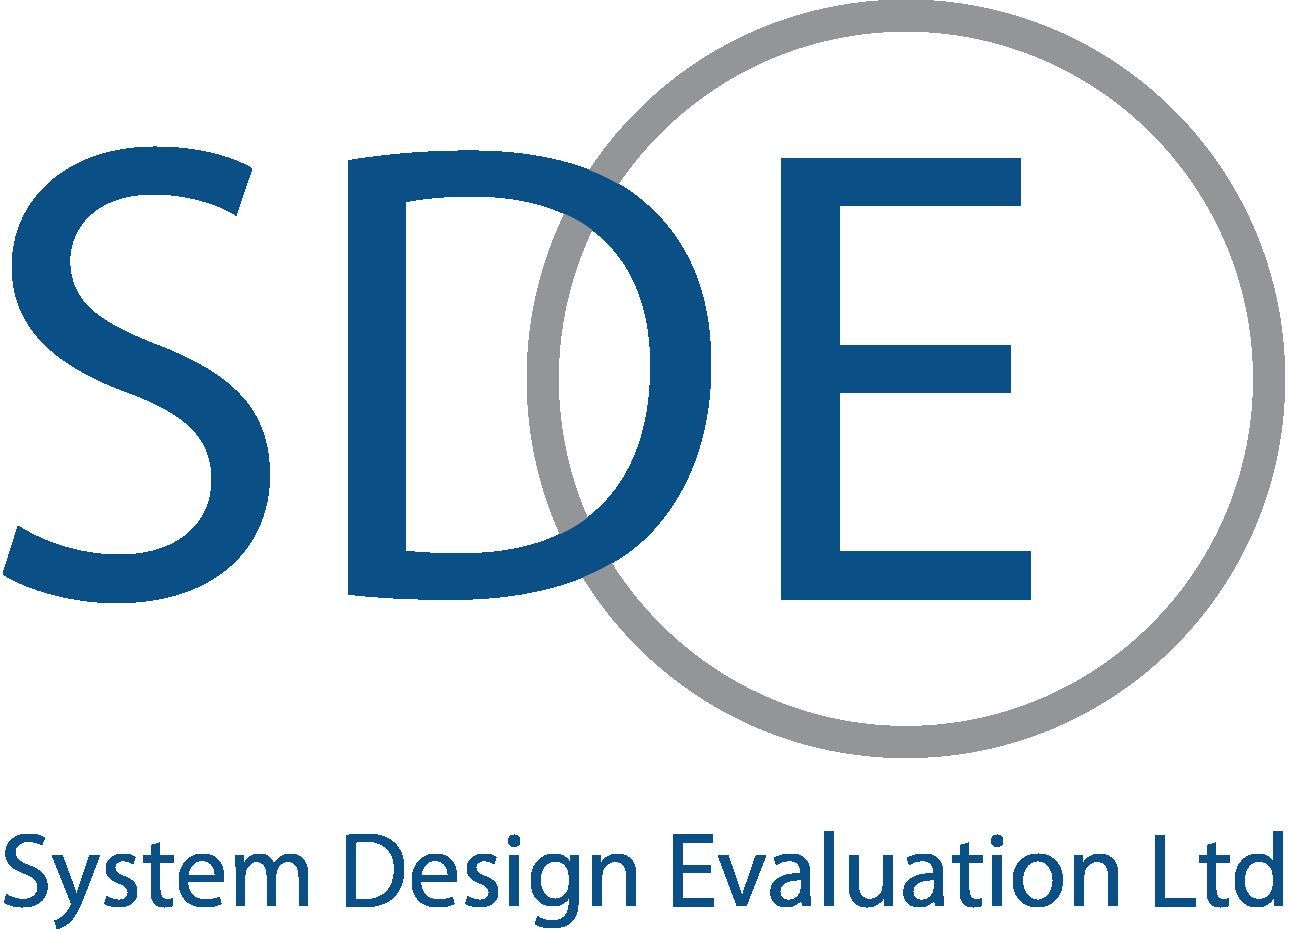 System Design Evaluation Ltd